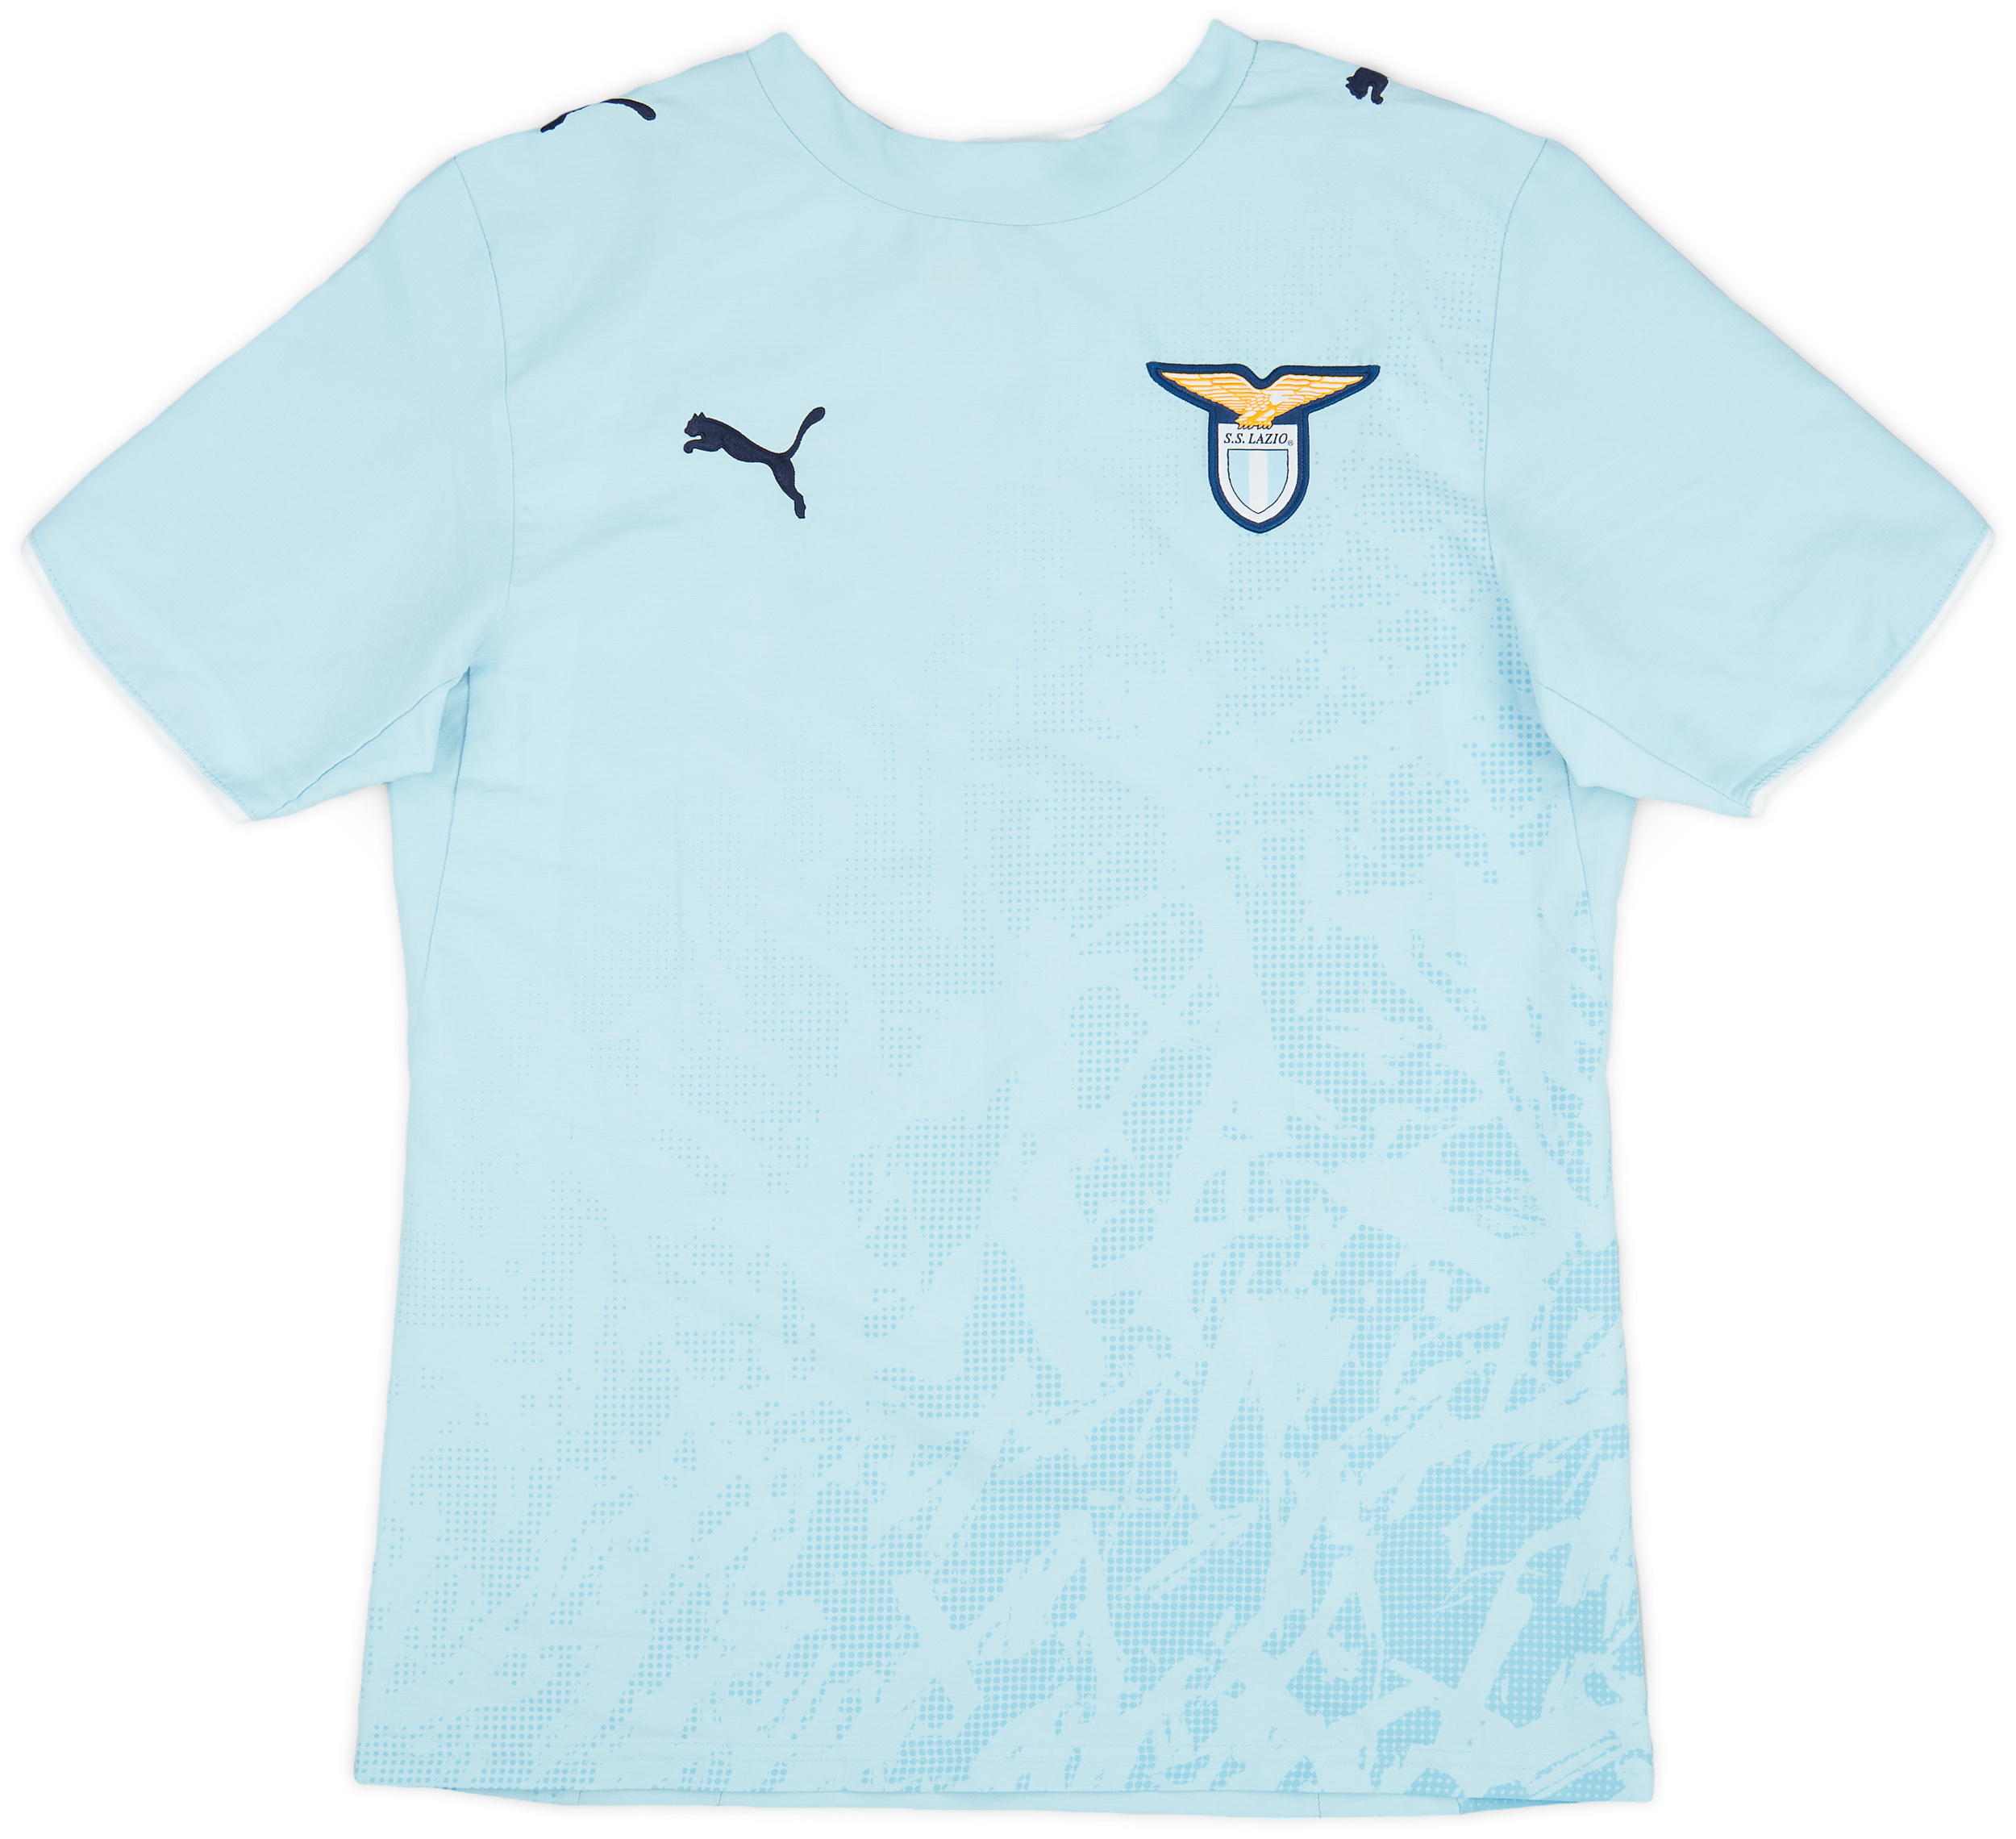 2006-07 Lazio Home Shirt - 9/10 - ()